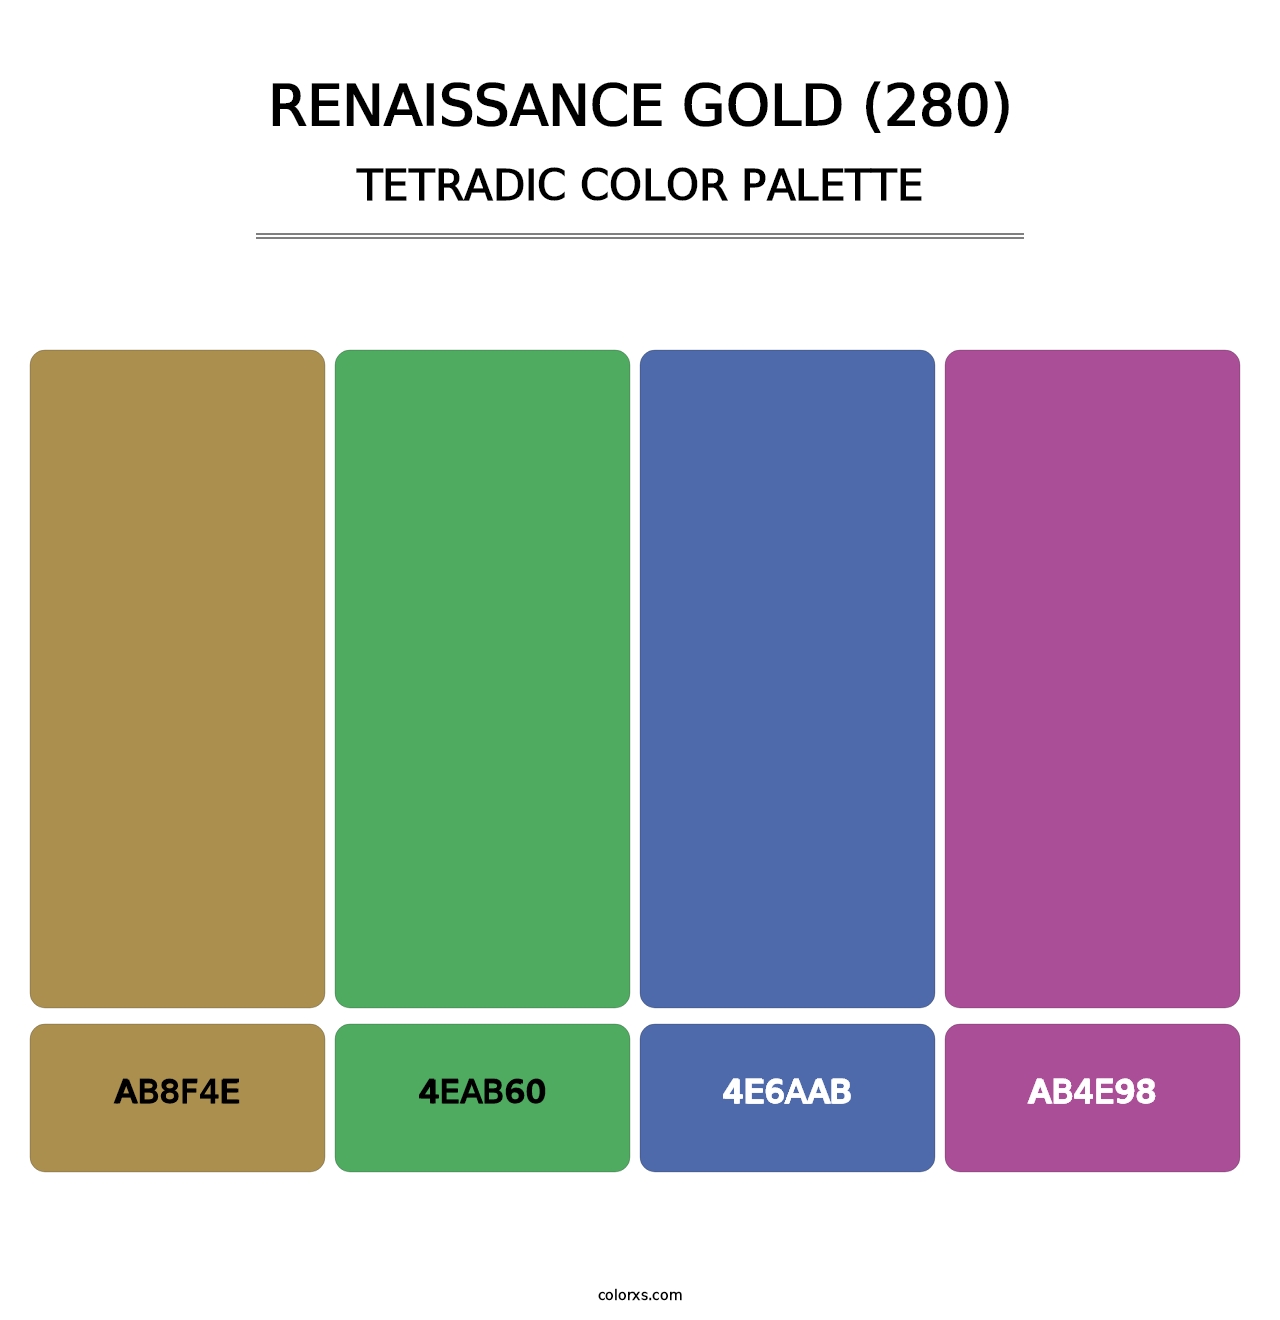 Renaissance Gold (280) - Tetradic Color Palette